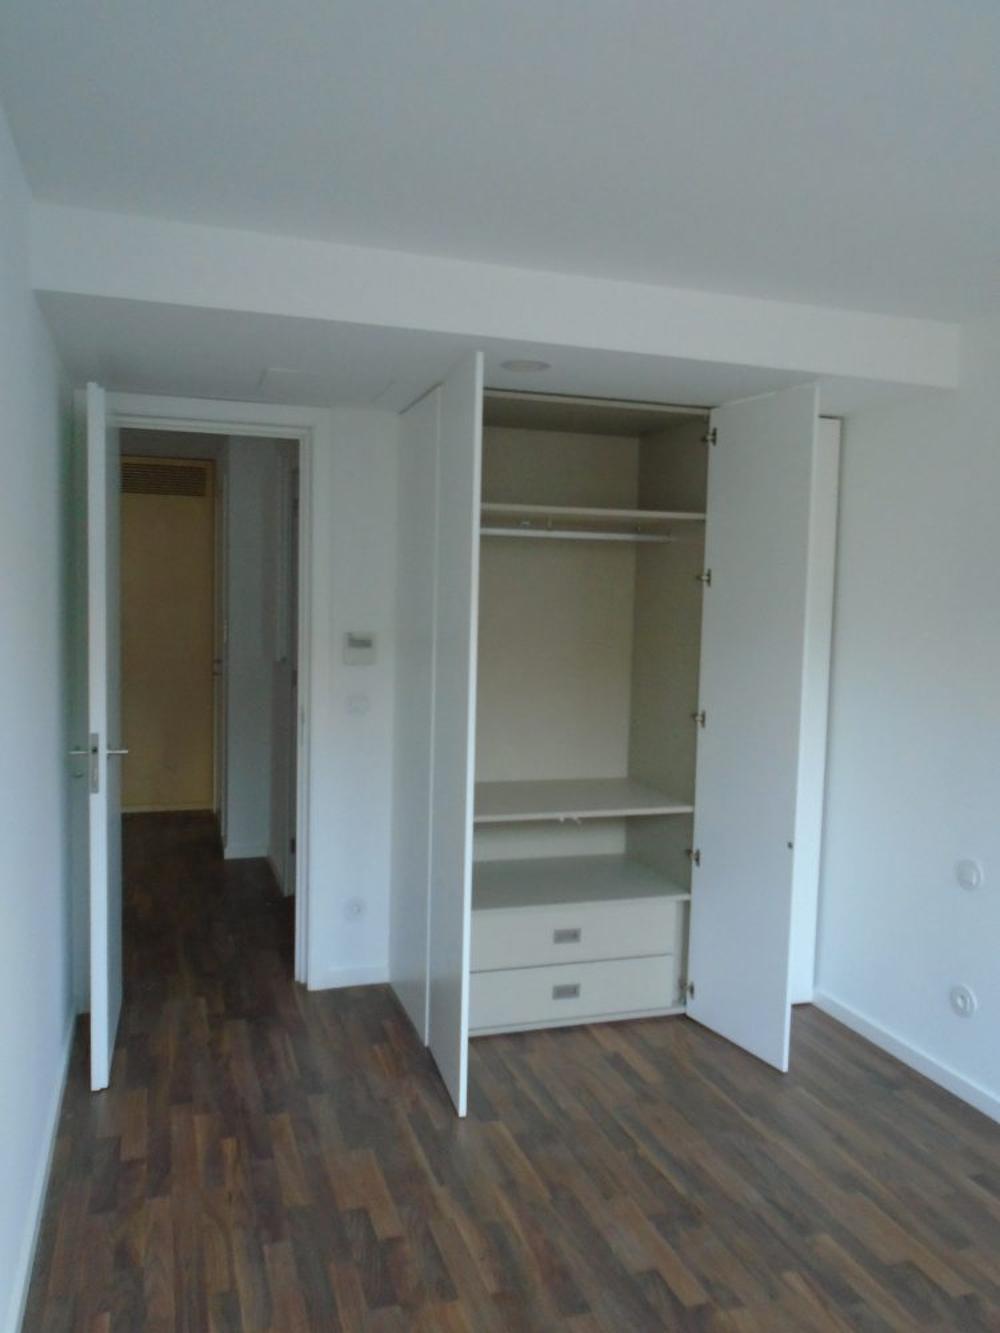  for sale apartment  Sobreira  Paredes 4